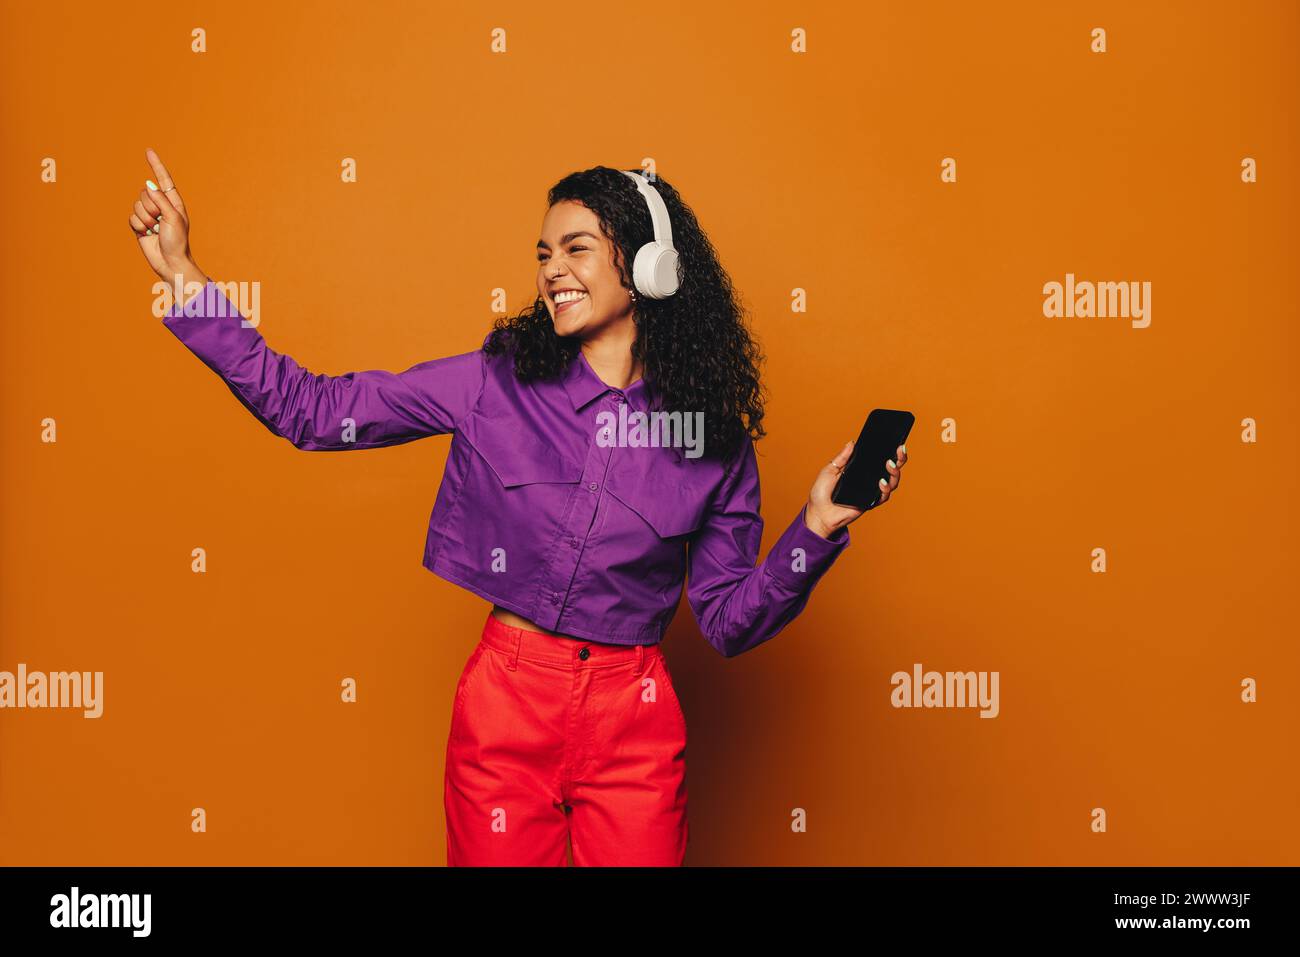 Fröhliche Frau in lässiger Kleidung tanzt zu Musik, Kopfhörer an, hält ein Handy. Leuchtende Farben und ein orangener Hintergrund sorgen für noch mehr Spaß. Stockfoto